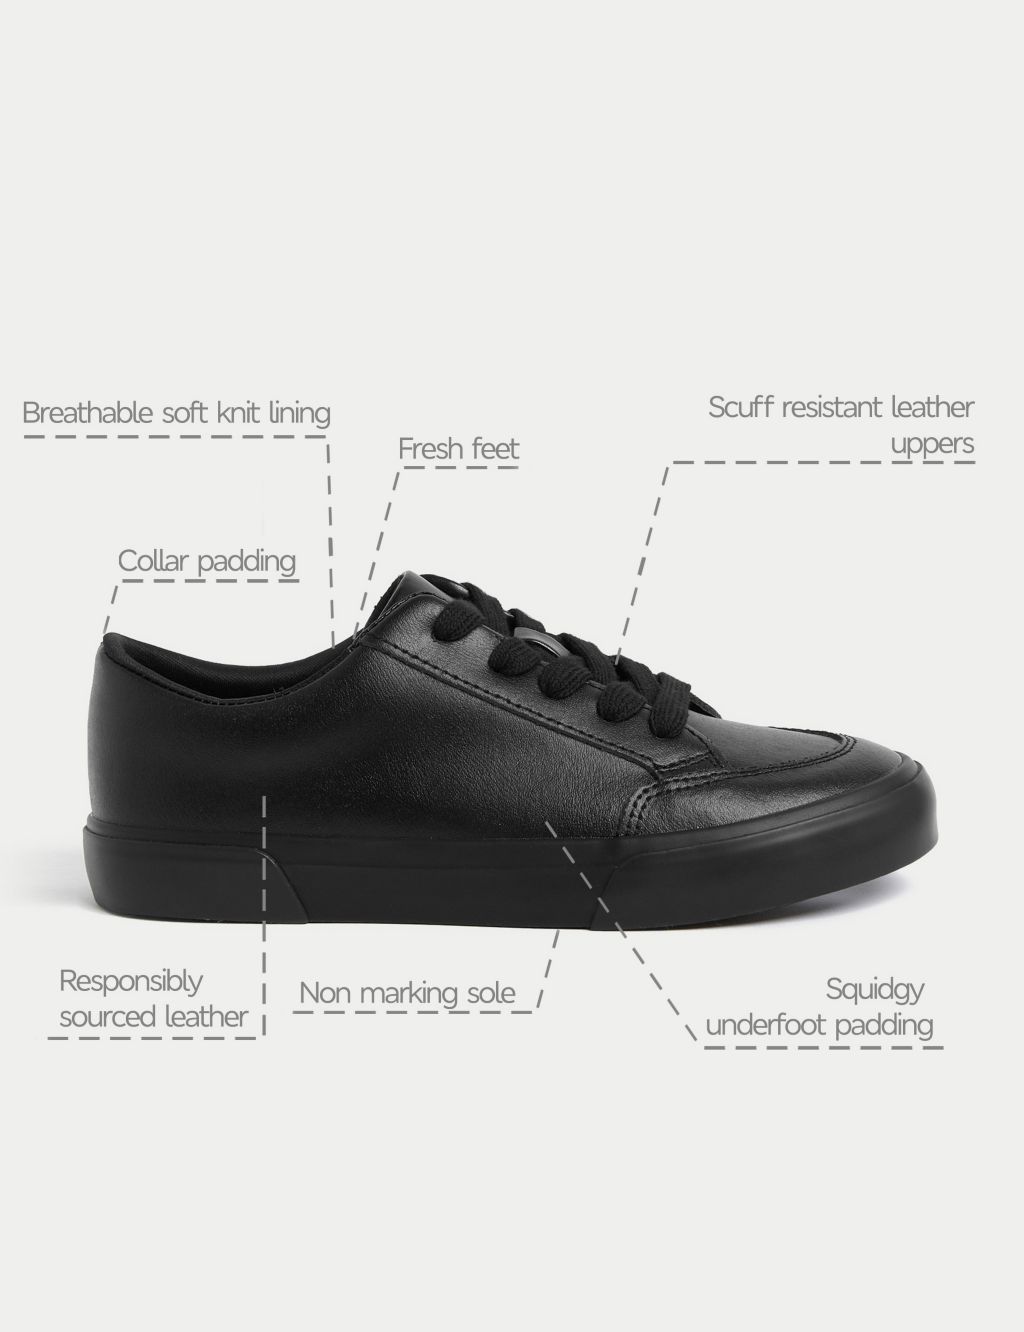 Kids' Leather Freshfeet™ School Shoes (2½ Large - 9 Large) image 5